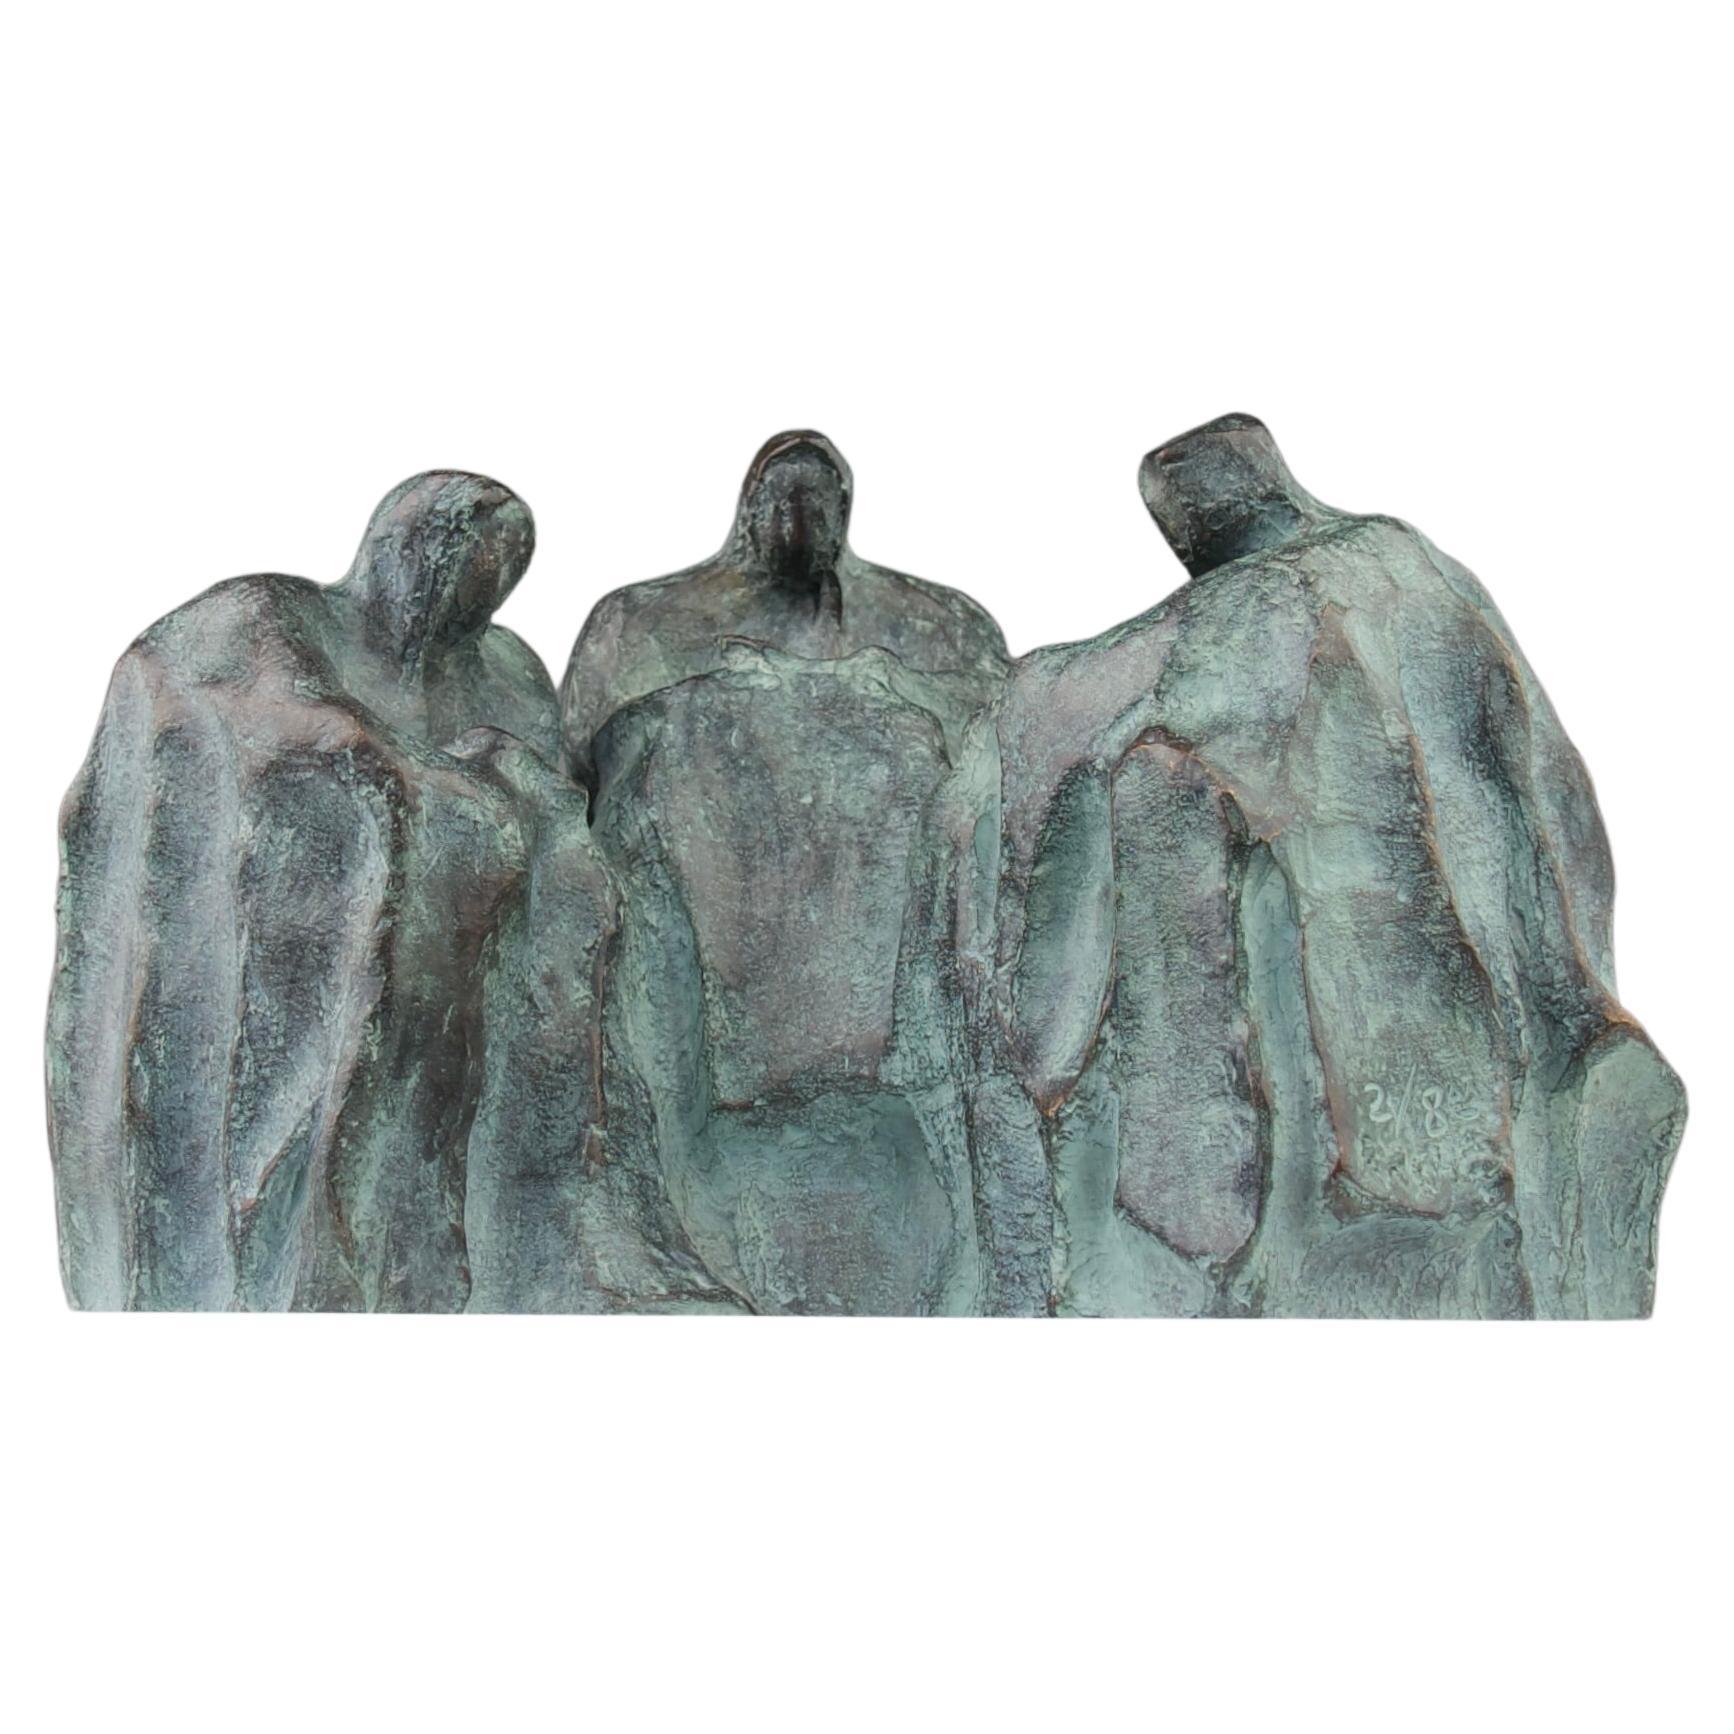 Rachel x Chapon Foundry, sculpture des trois lecteurs, bronze, France, années 2000